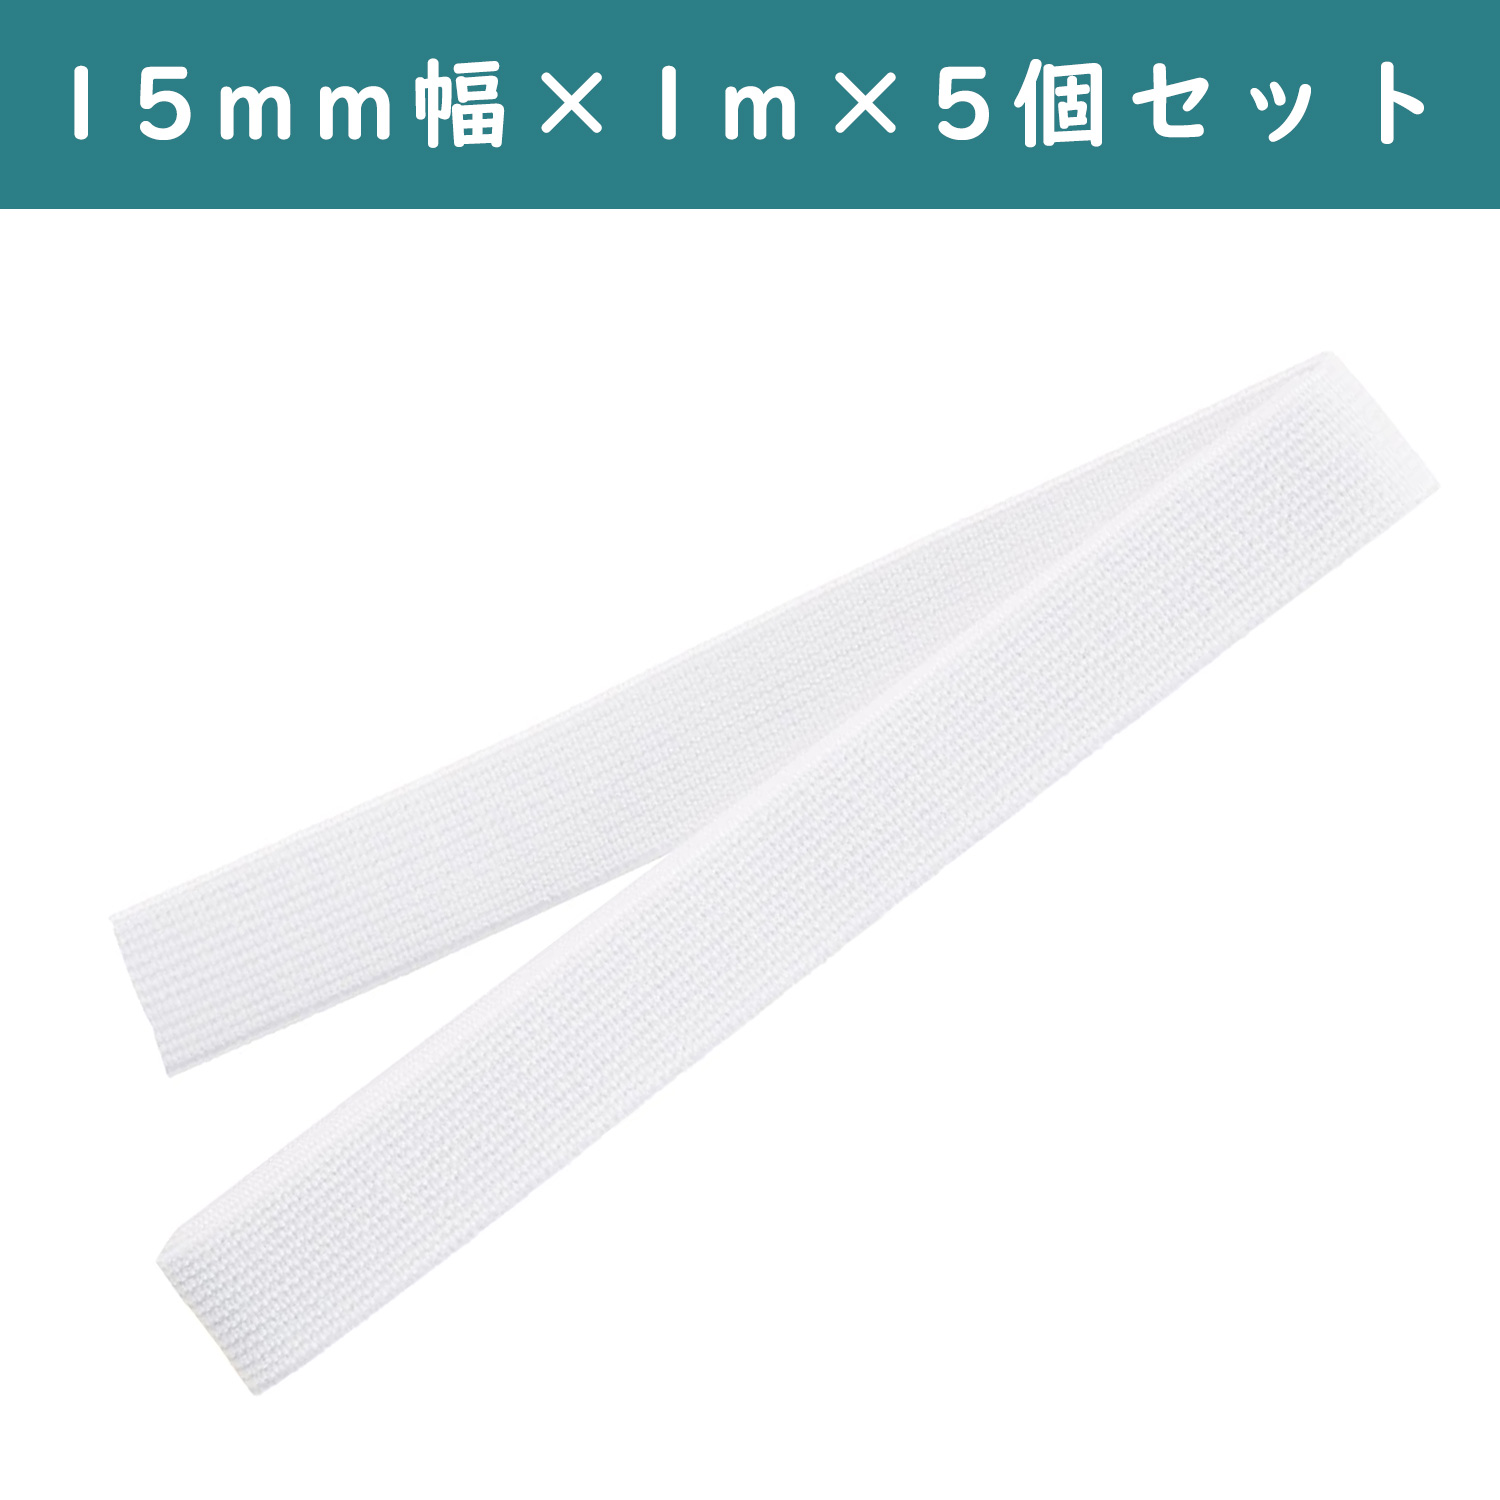 ■【5個】CL26-039-5set ゴムベルト 15mm幅 白 ×5個 (セット)